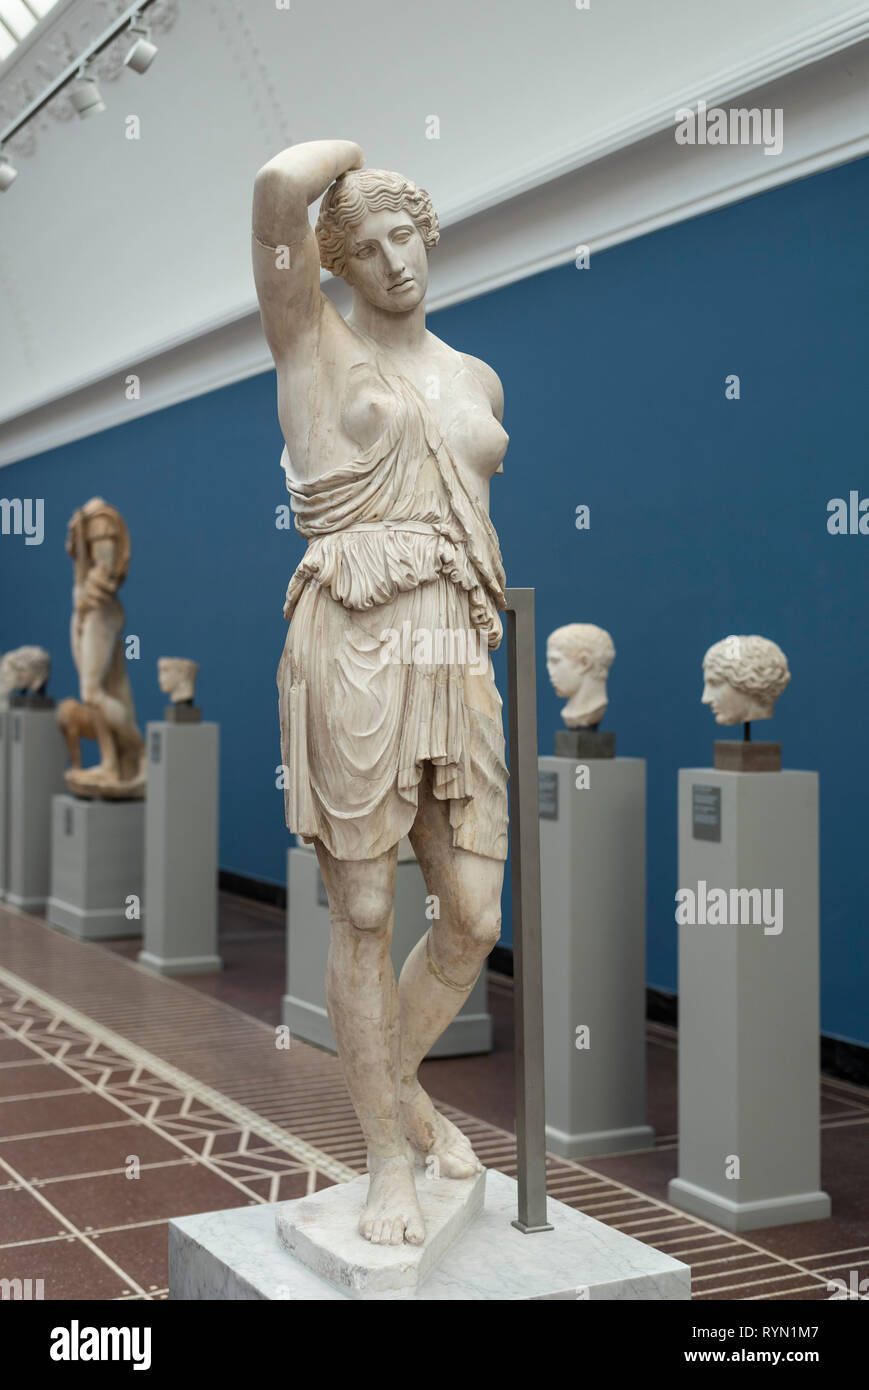 Kopenhagen. Dänemark. Verwundet Amazon Statue, Ca. 150 AD. Ny Carlsberg  Glyptotek. Römische Kopie vom Ca. 150 AD, abgeleitet von einem  ursprünglichen Gedanken zu werden Stockfotografie - Alamy